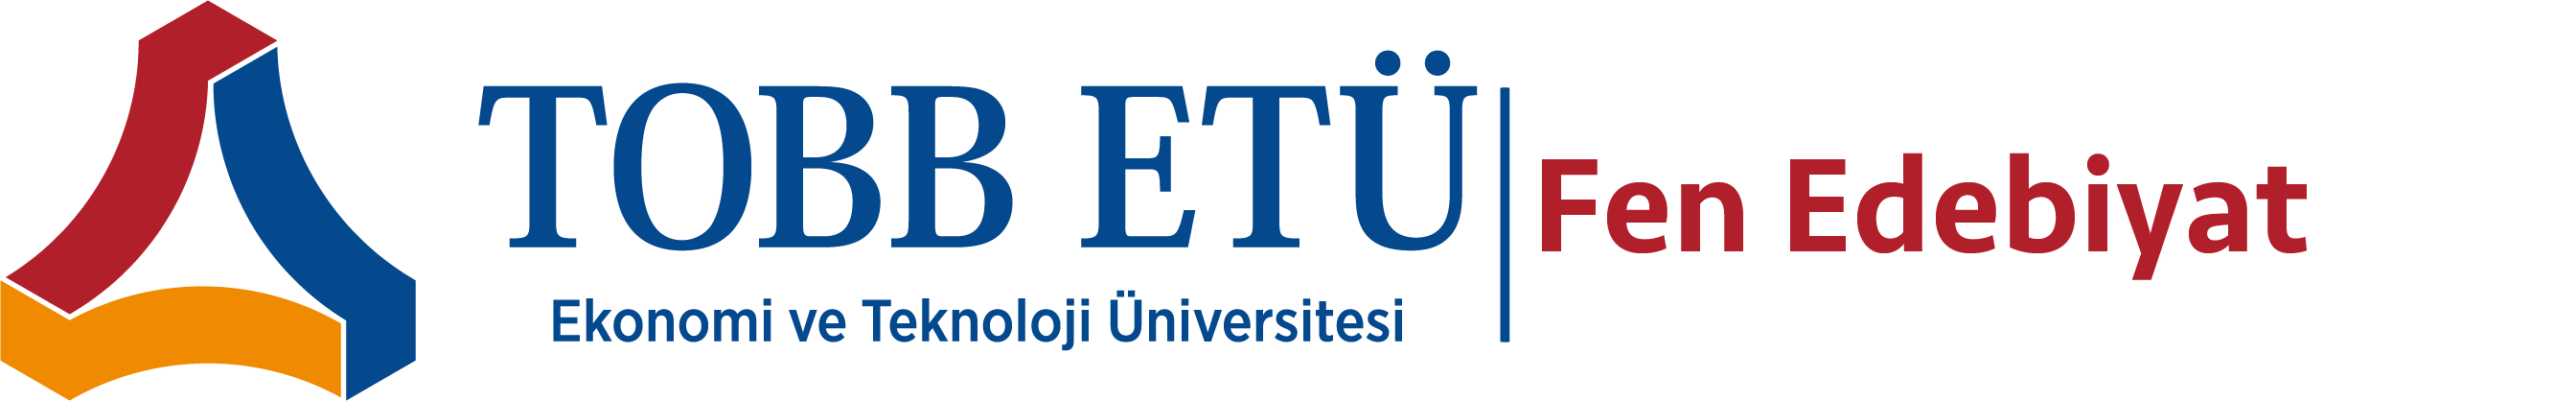 TOBB ETÜ - Ekonomi ve Teknoloji Üniversitesi